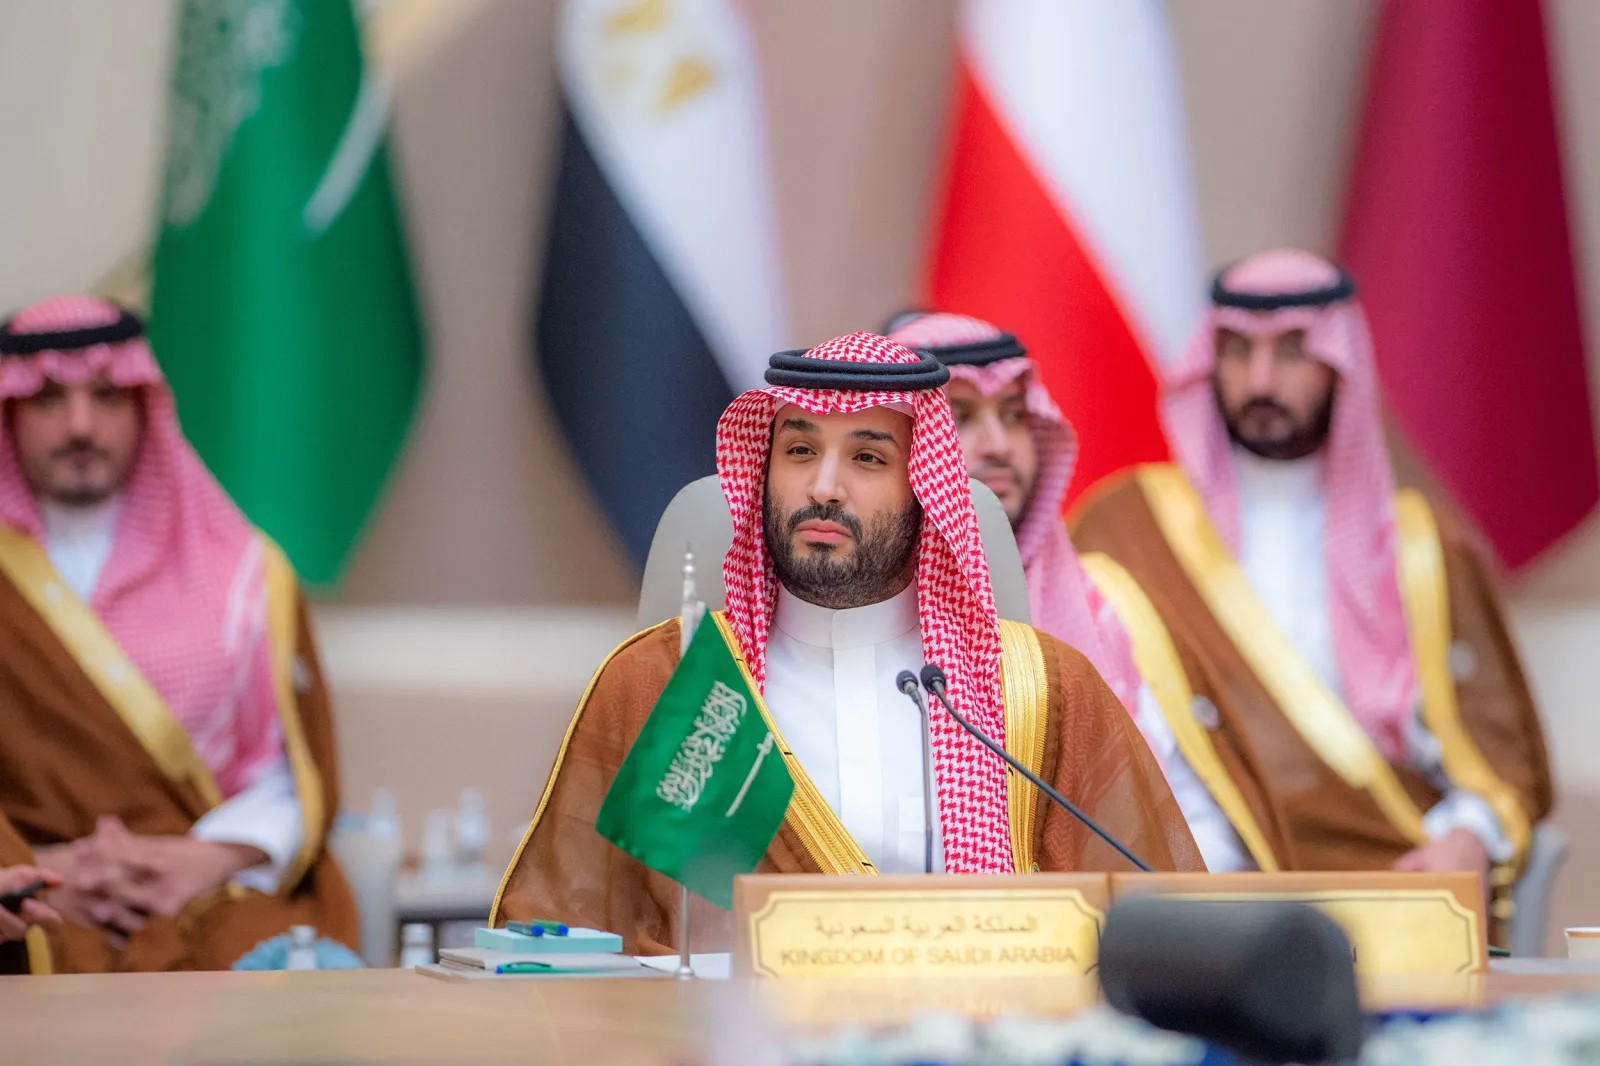 عربستان سعودی رسما به بریکس می پیوندد تا به سلطه دلار آمریکا پایان دهد